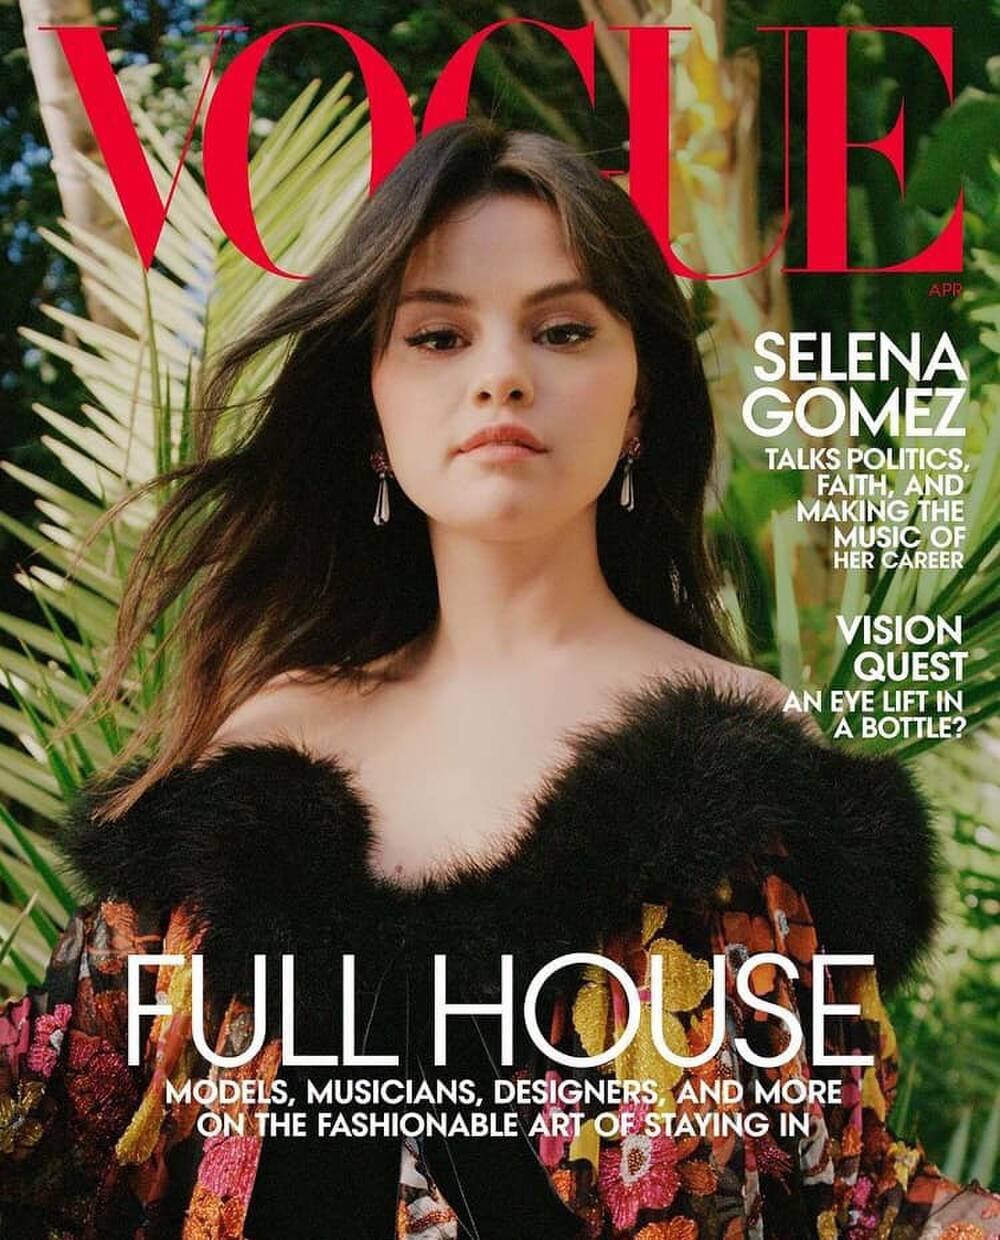 Selena Gomez là gương mặt trang bìa Vogue Mỹ số tháng 4. Bộ ảnh được chụp tại nhà của nữ diễn viên tại Los Angeles. Ở trang bìa, cô diện một chiếc váy của YSL, đeo bông tai Cartier. Cô trang điểm bằng các sản phẩm đến từ thương hiệu mỹ phẩm cá nhân Rare Beauty. Người thực hiện layout makeup này là MUA gốc Việt Hùng Văn Ngô - một người bạn thân của nữ ca sĩ.